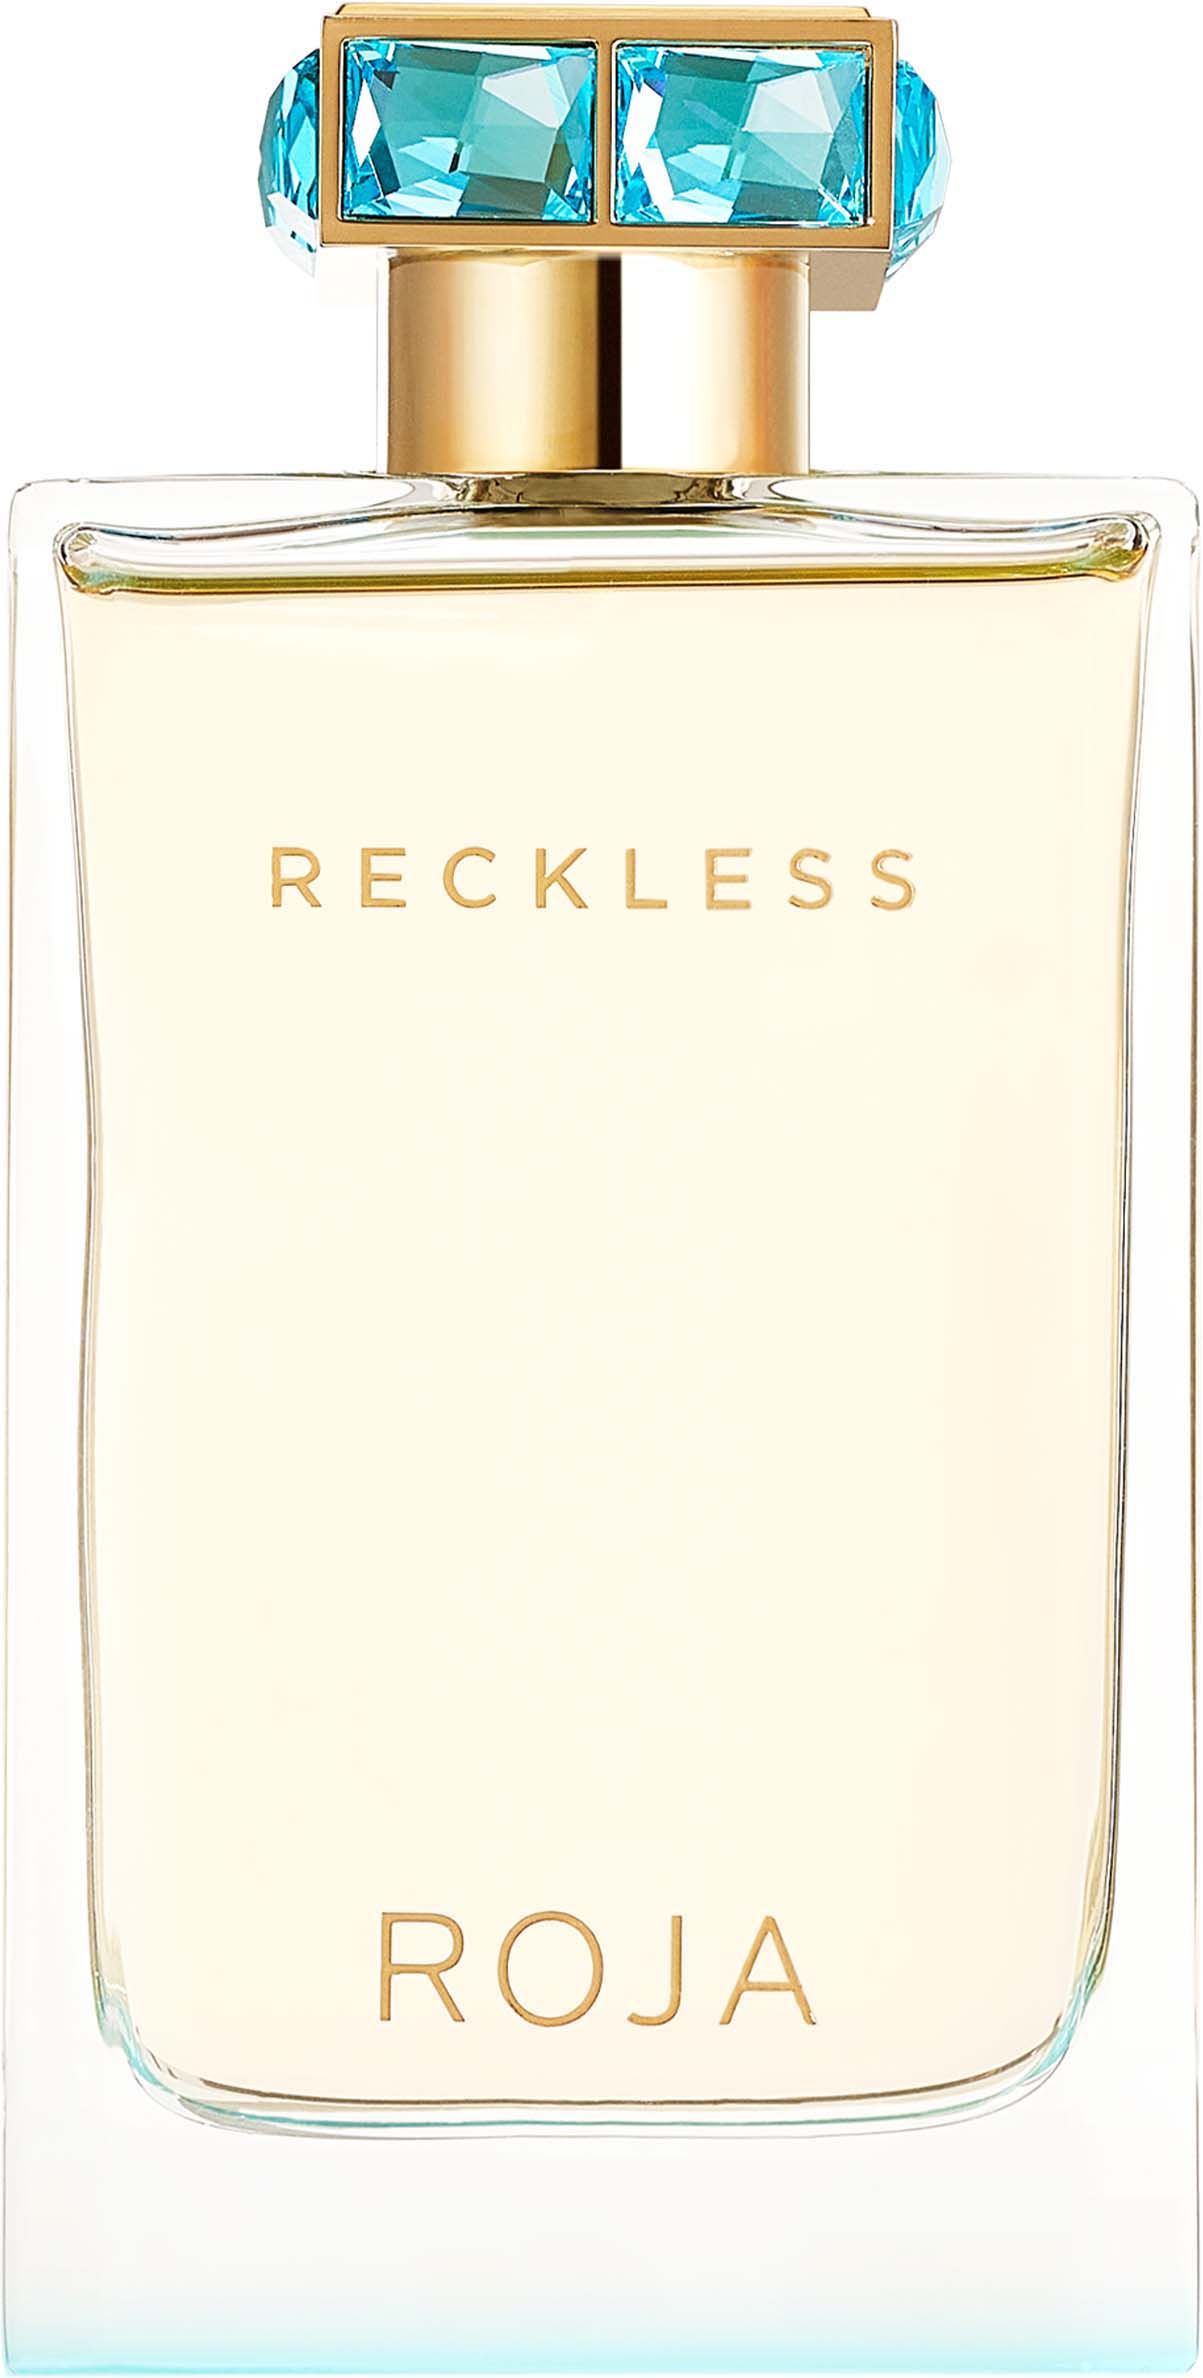 roja parfums reckless essence de parfum ekstrakt perfum 75 ml   